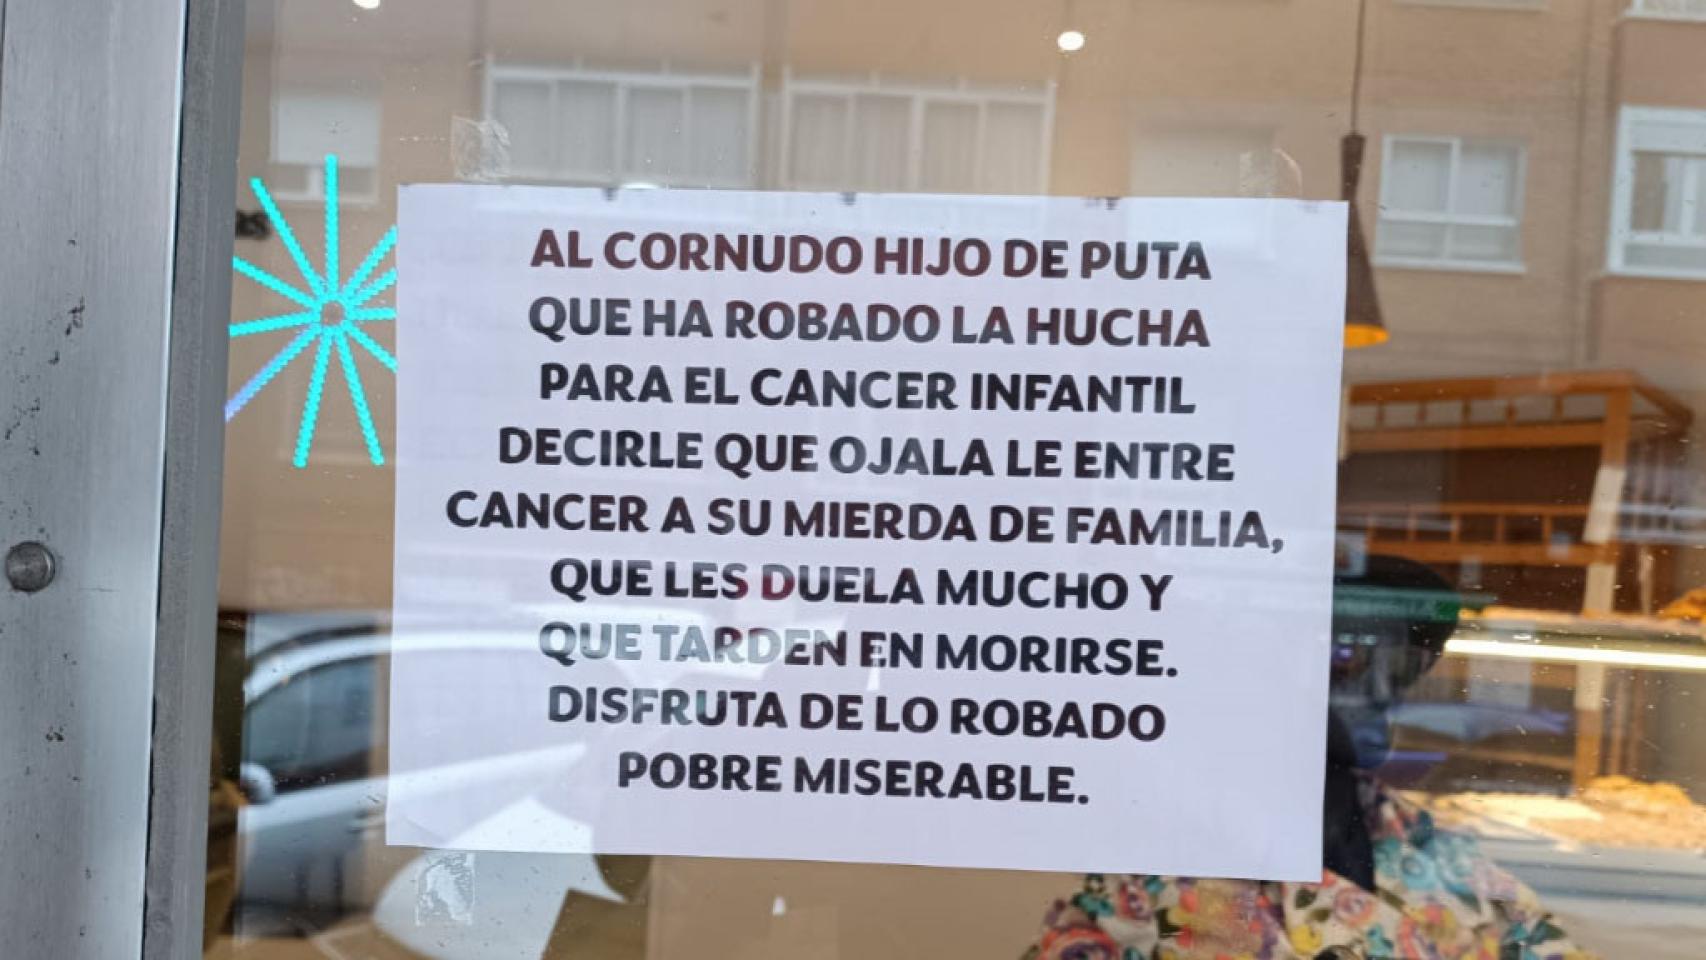 Imagen del cartel en la pastelería Ricardo Blanco de Valladolid